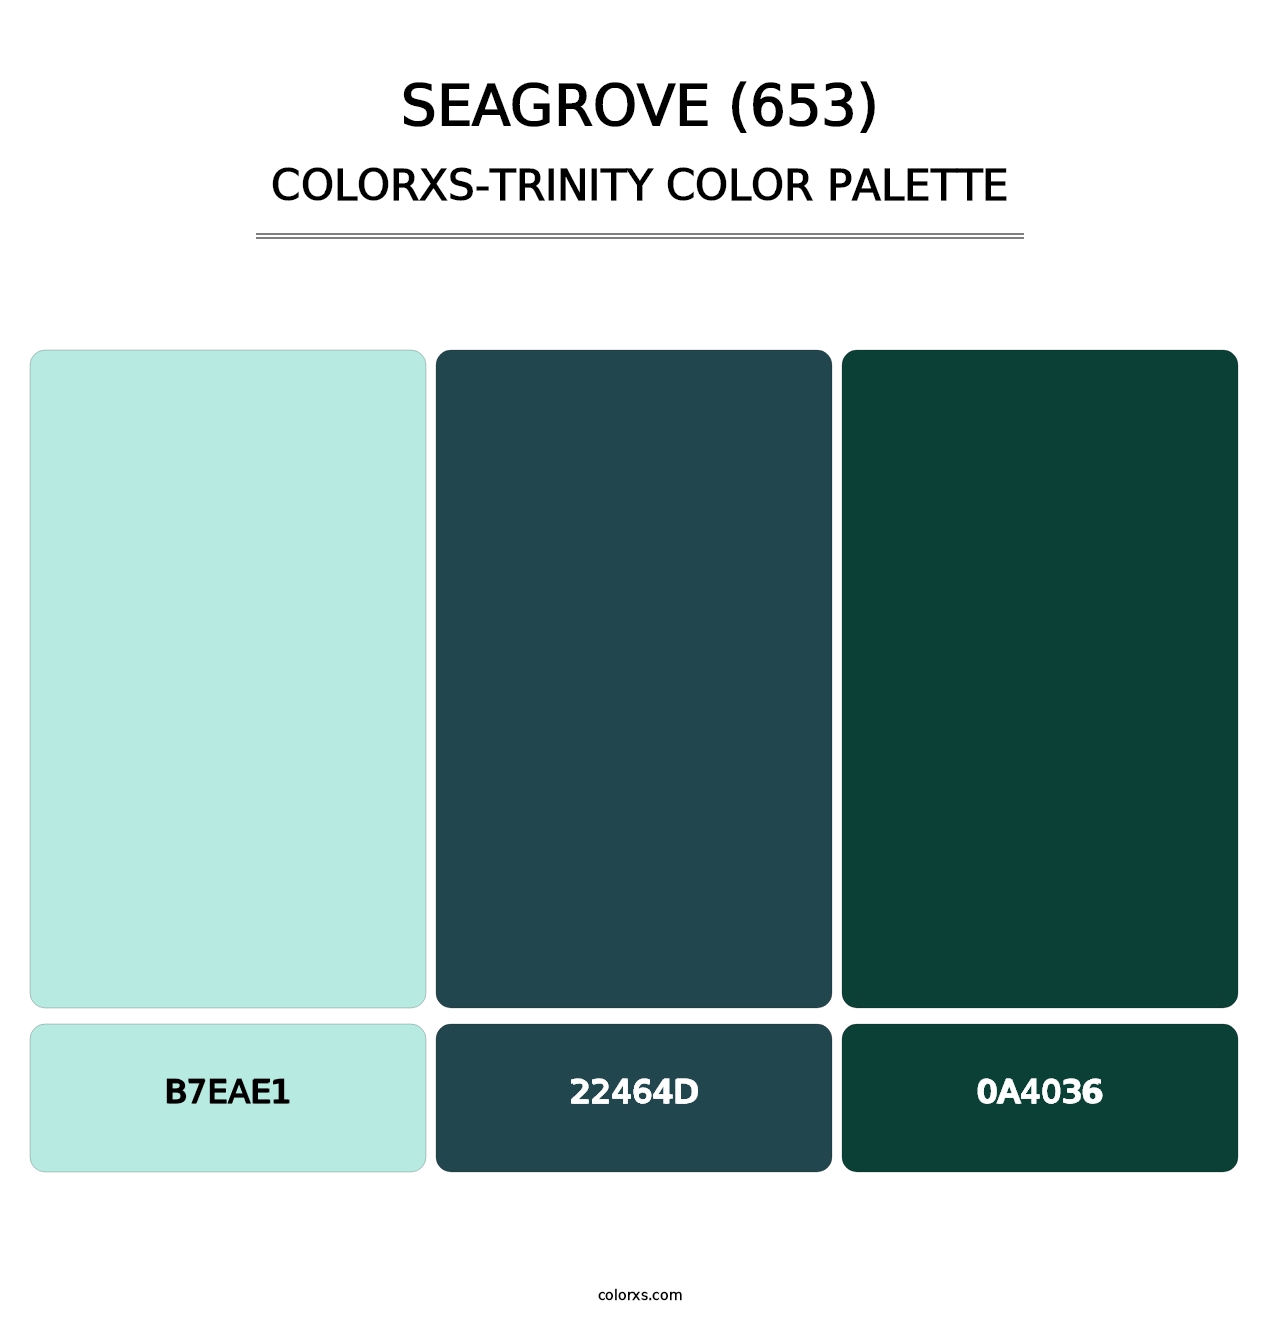 Seagrove (653) - Colorxs Trinity Palette